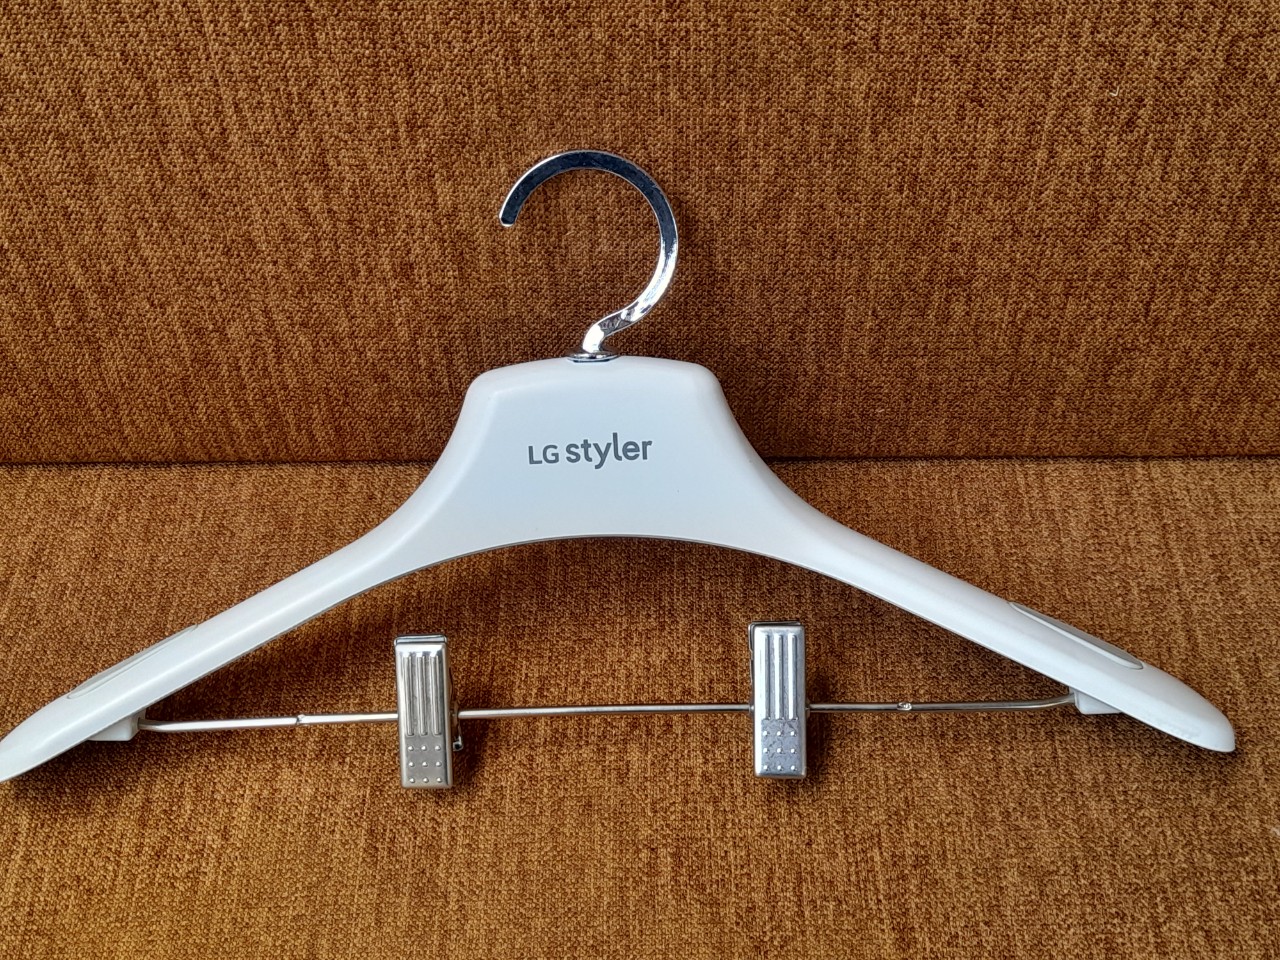 Linh kiện/Phụ kiện_Hanger Assembly (Mắc áo chuyên dùng cho tủ chăm sóc quần áo LG Styler)